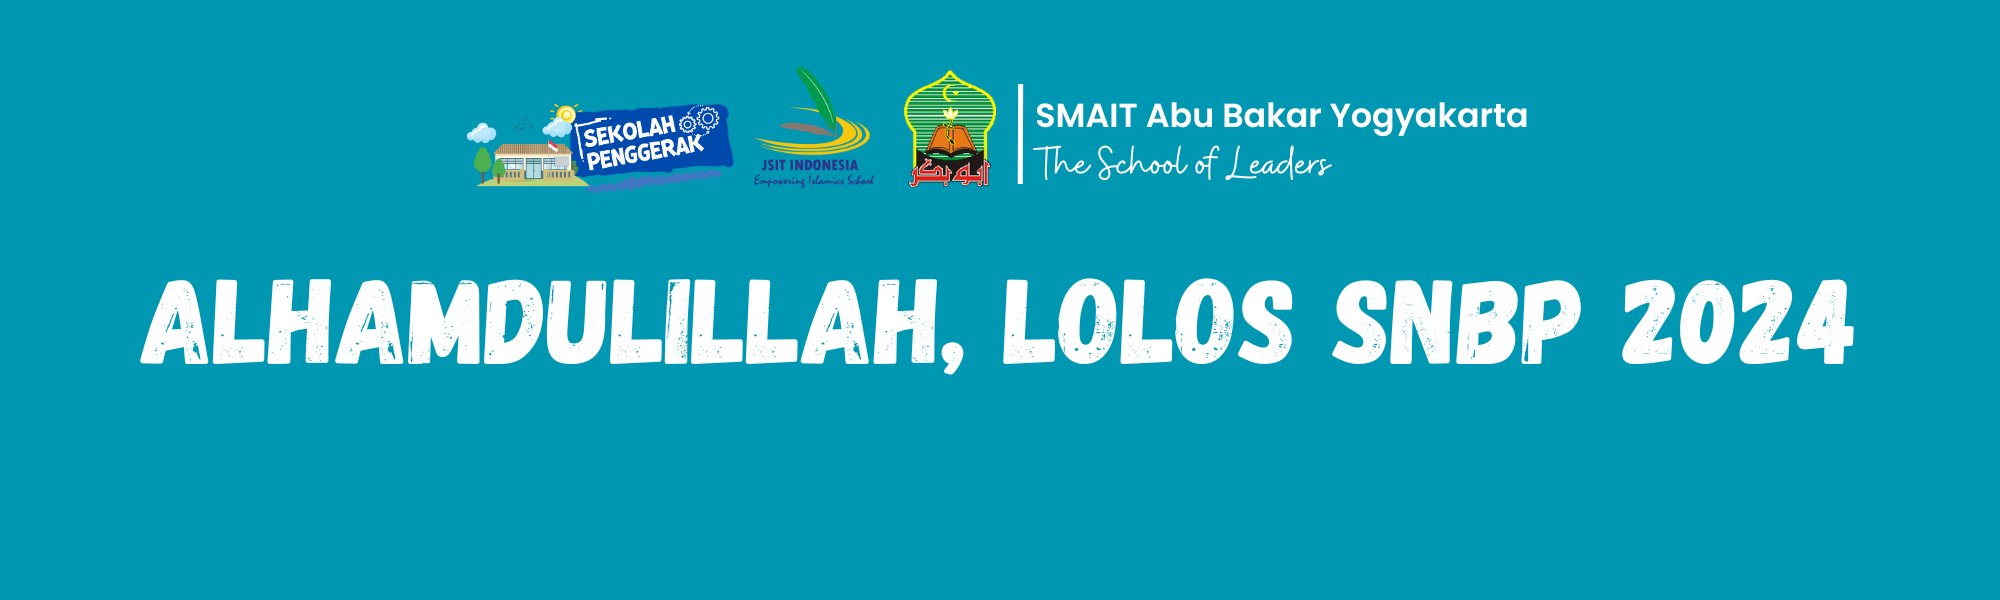 Alhamdulillah! 15 Siswa SMAIT Abu Bakar Yogyakarta Berhasil Lolos SNBP 2024